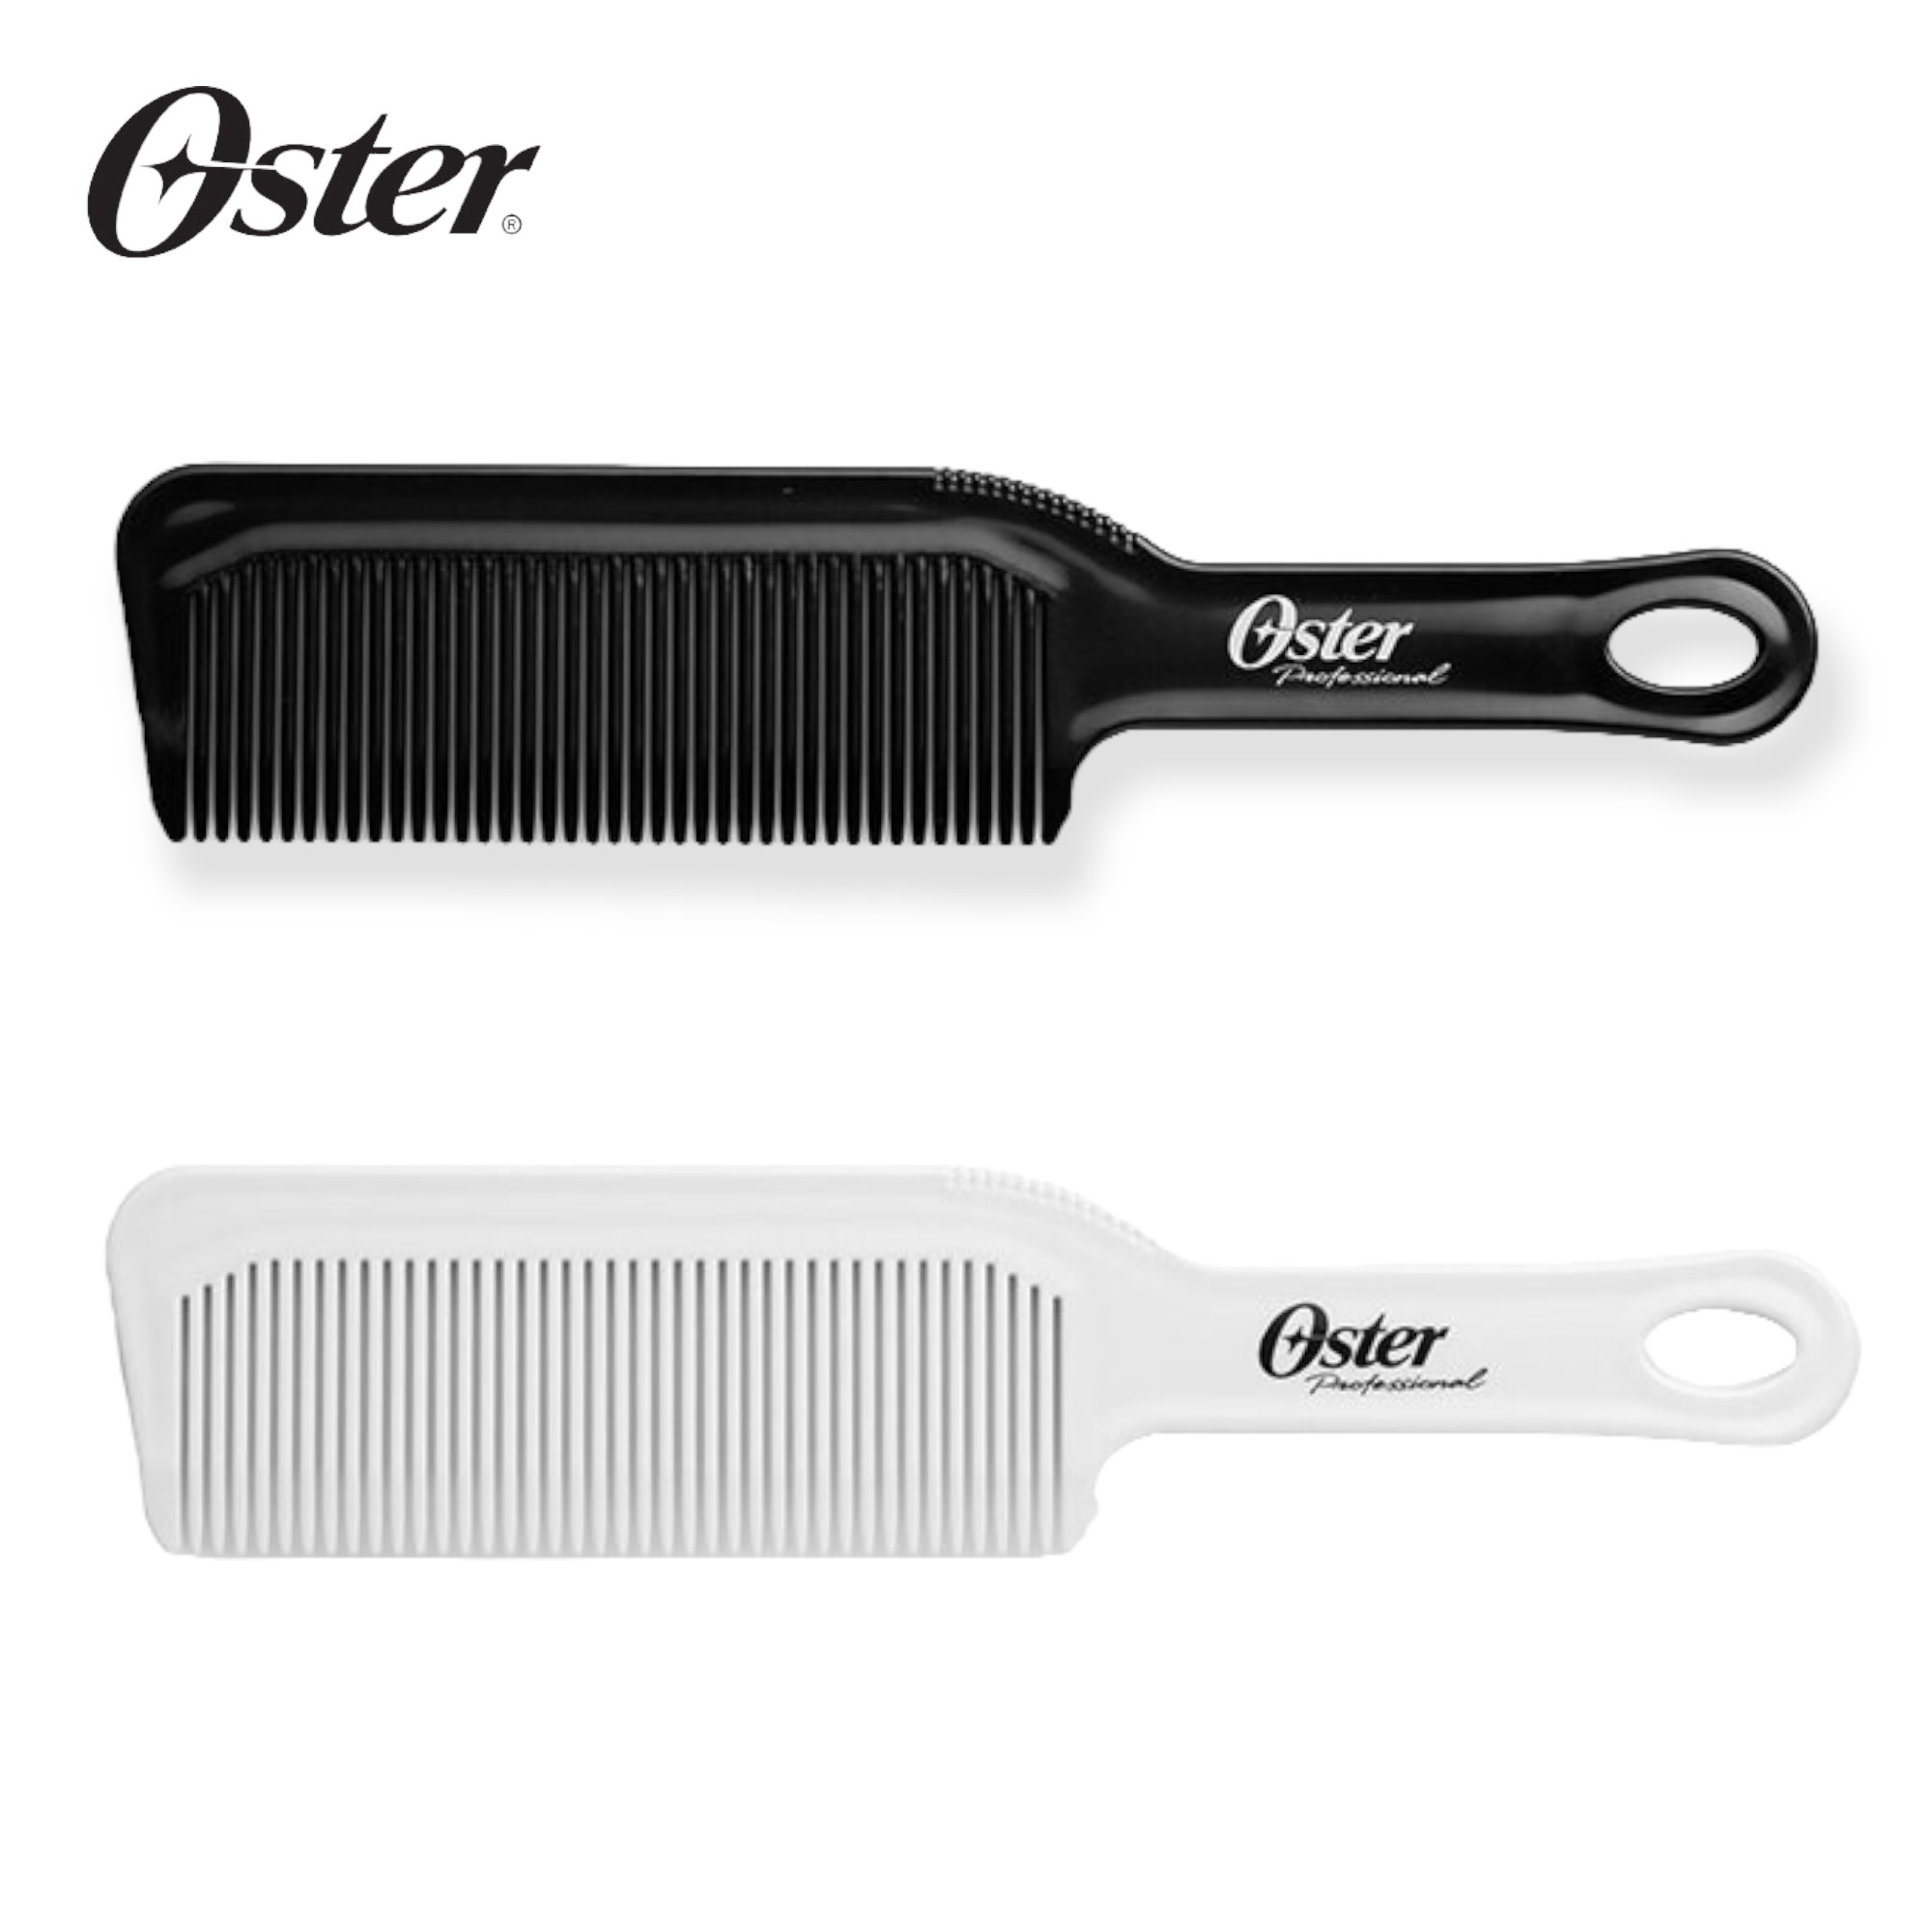 Lược Oster Barber - Nội Địa Mỹ